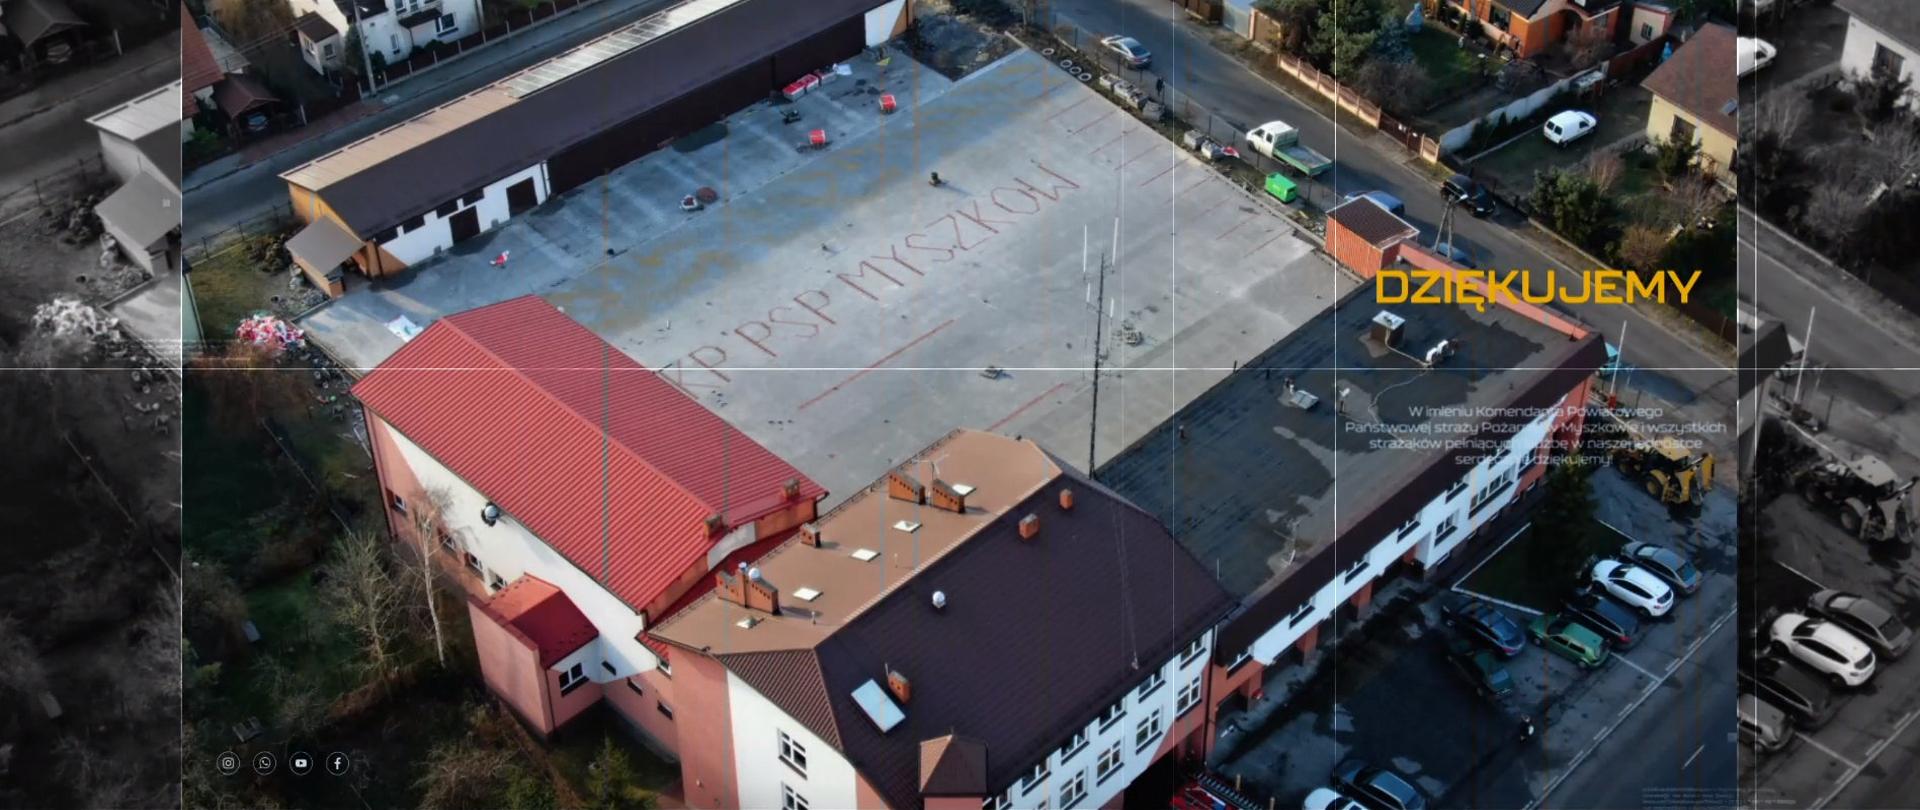 Zdjęcie przedstawia plac wewnętrzny Komendy Powiatowej PSP w Myszkowie - widok z góry. W centralnej części kadru znajduje się nowa nawierzchnia wykonana z kostki brukowej, otoczona przez budynki komendy. 